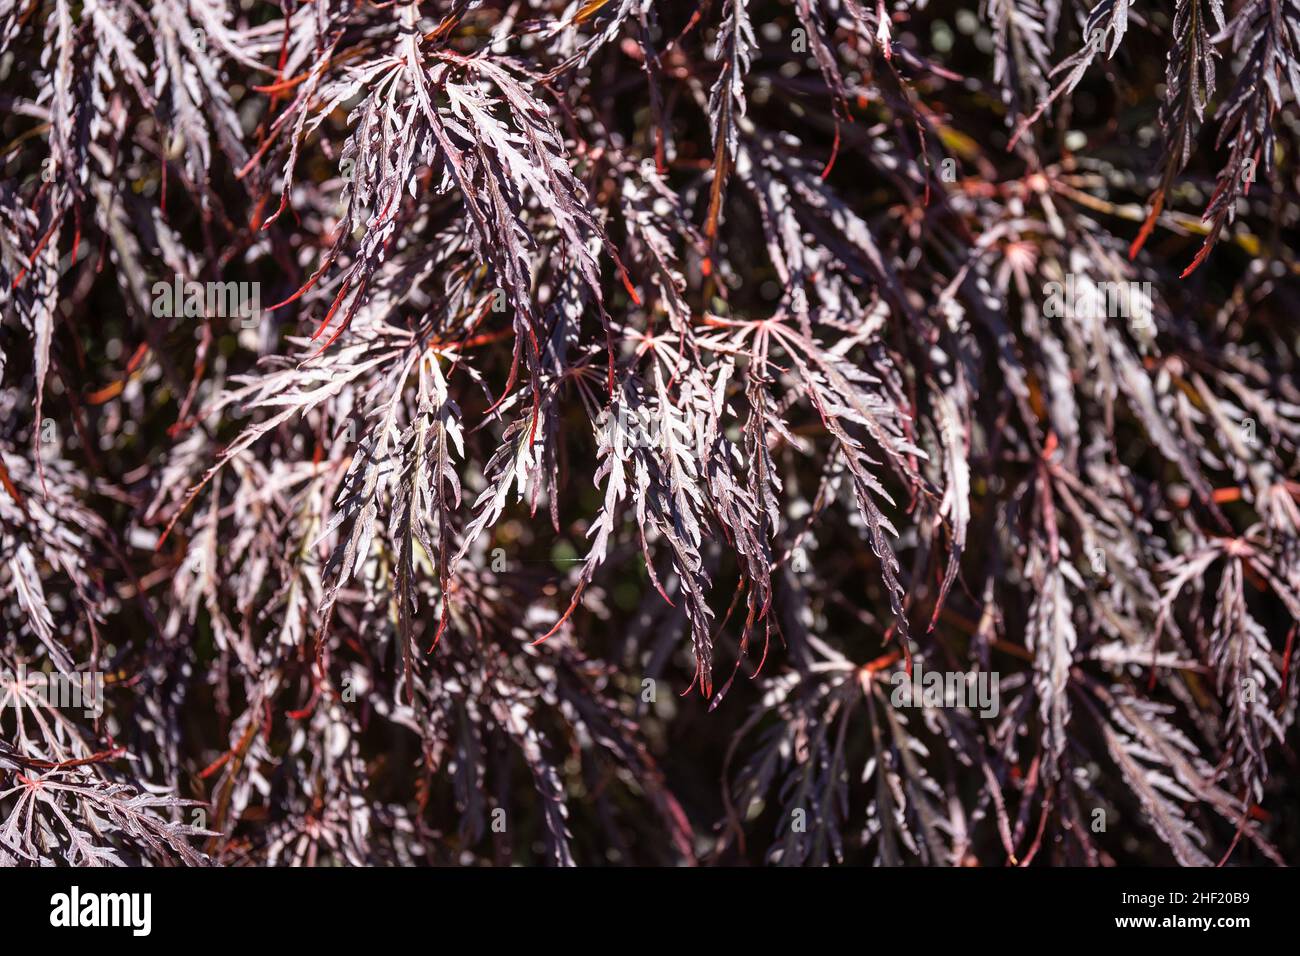 Crimson Queen Japanese Maple (Acer palmatum var. dissectum 'Crimson Queen') ist ein niedrig verzweigter Zwergbaum mit einer zarten, weinenden Form. Das Laub ho Stockfoto